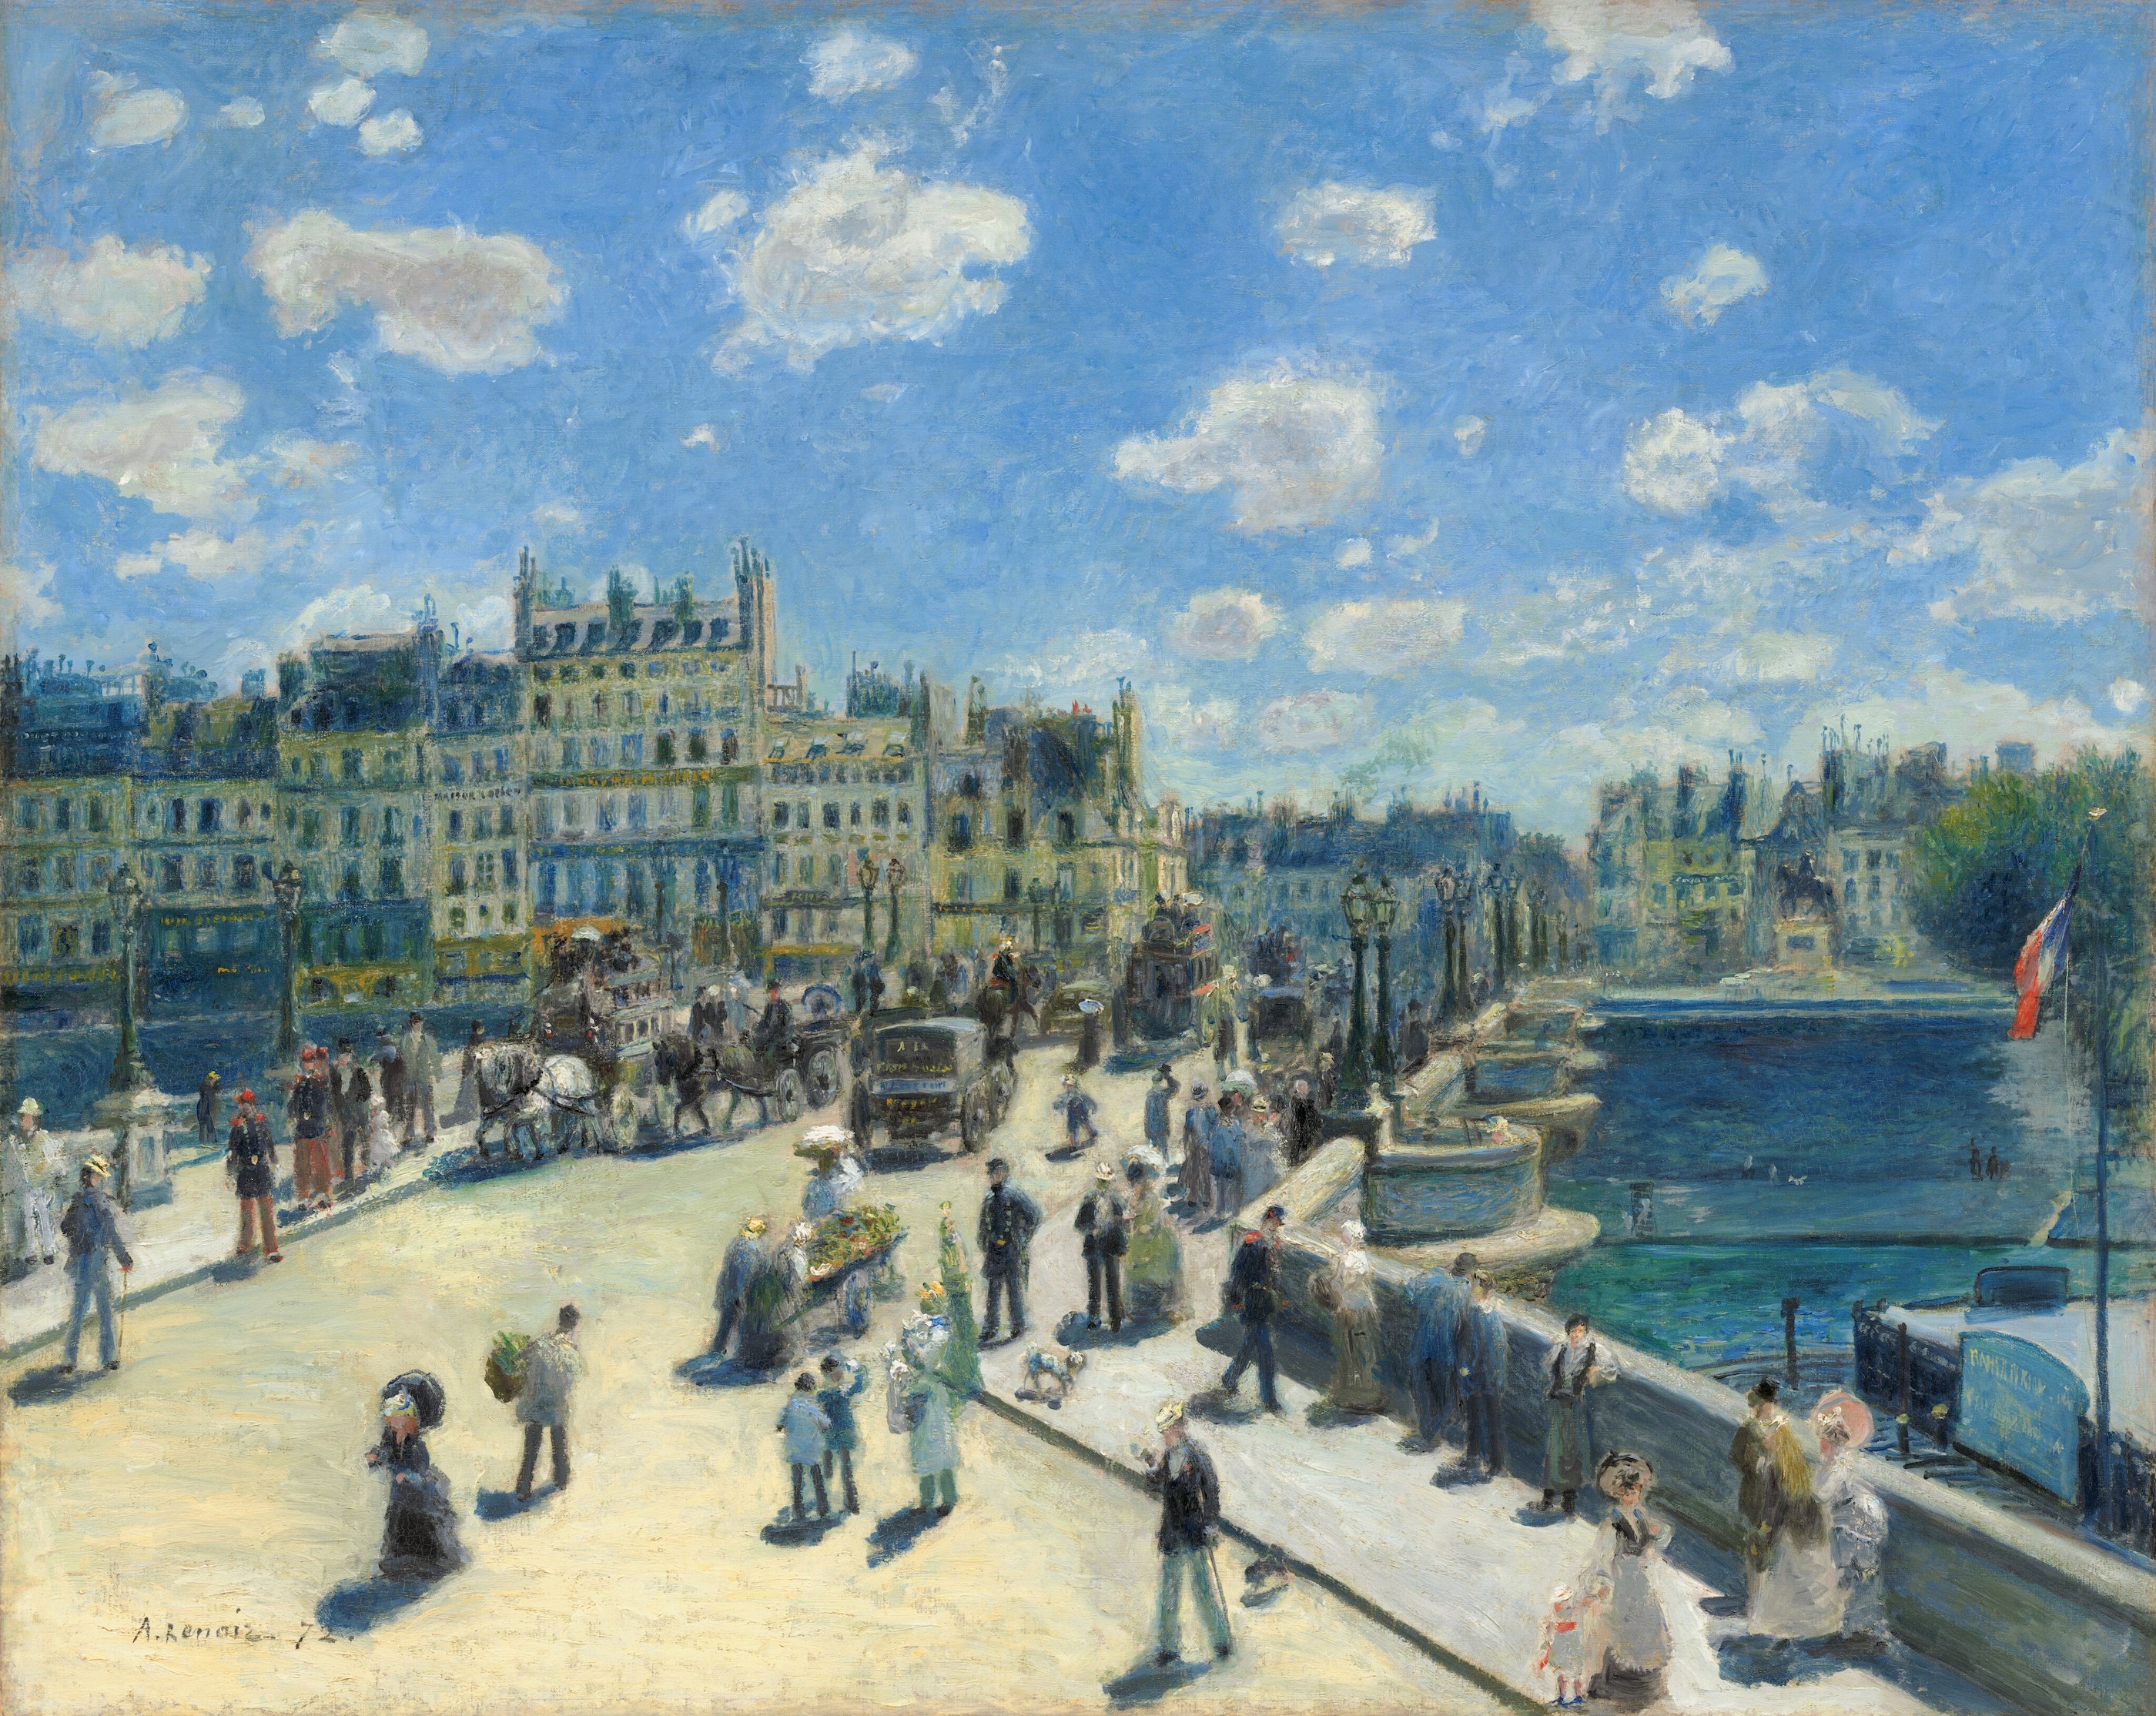 Le Pont Neuf v Paříži by Pierre-Auguste Renoir - 1872 - 75,3 cm x 93,7 cm 